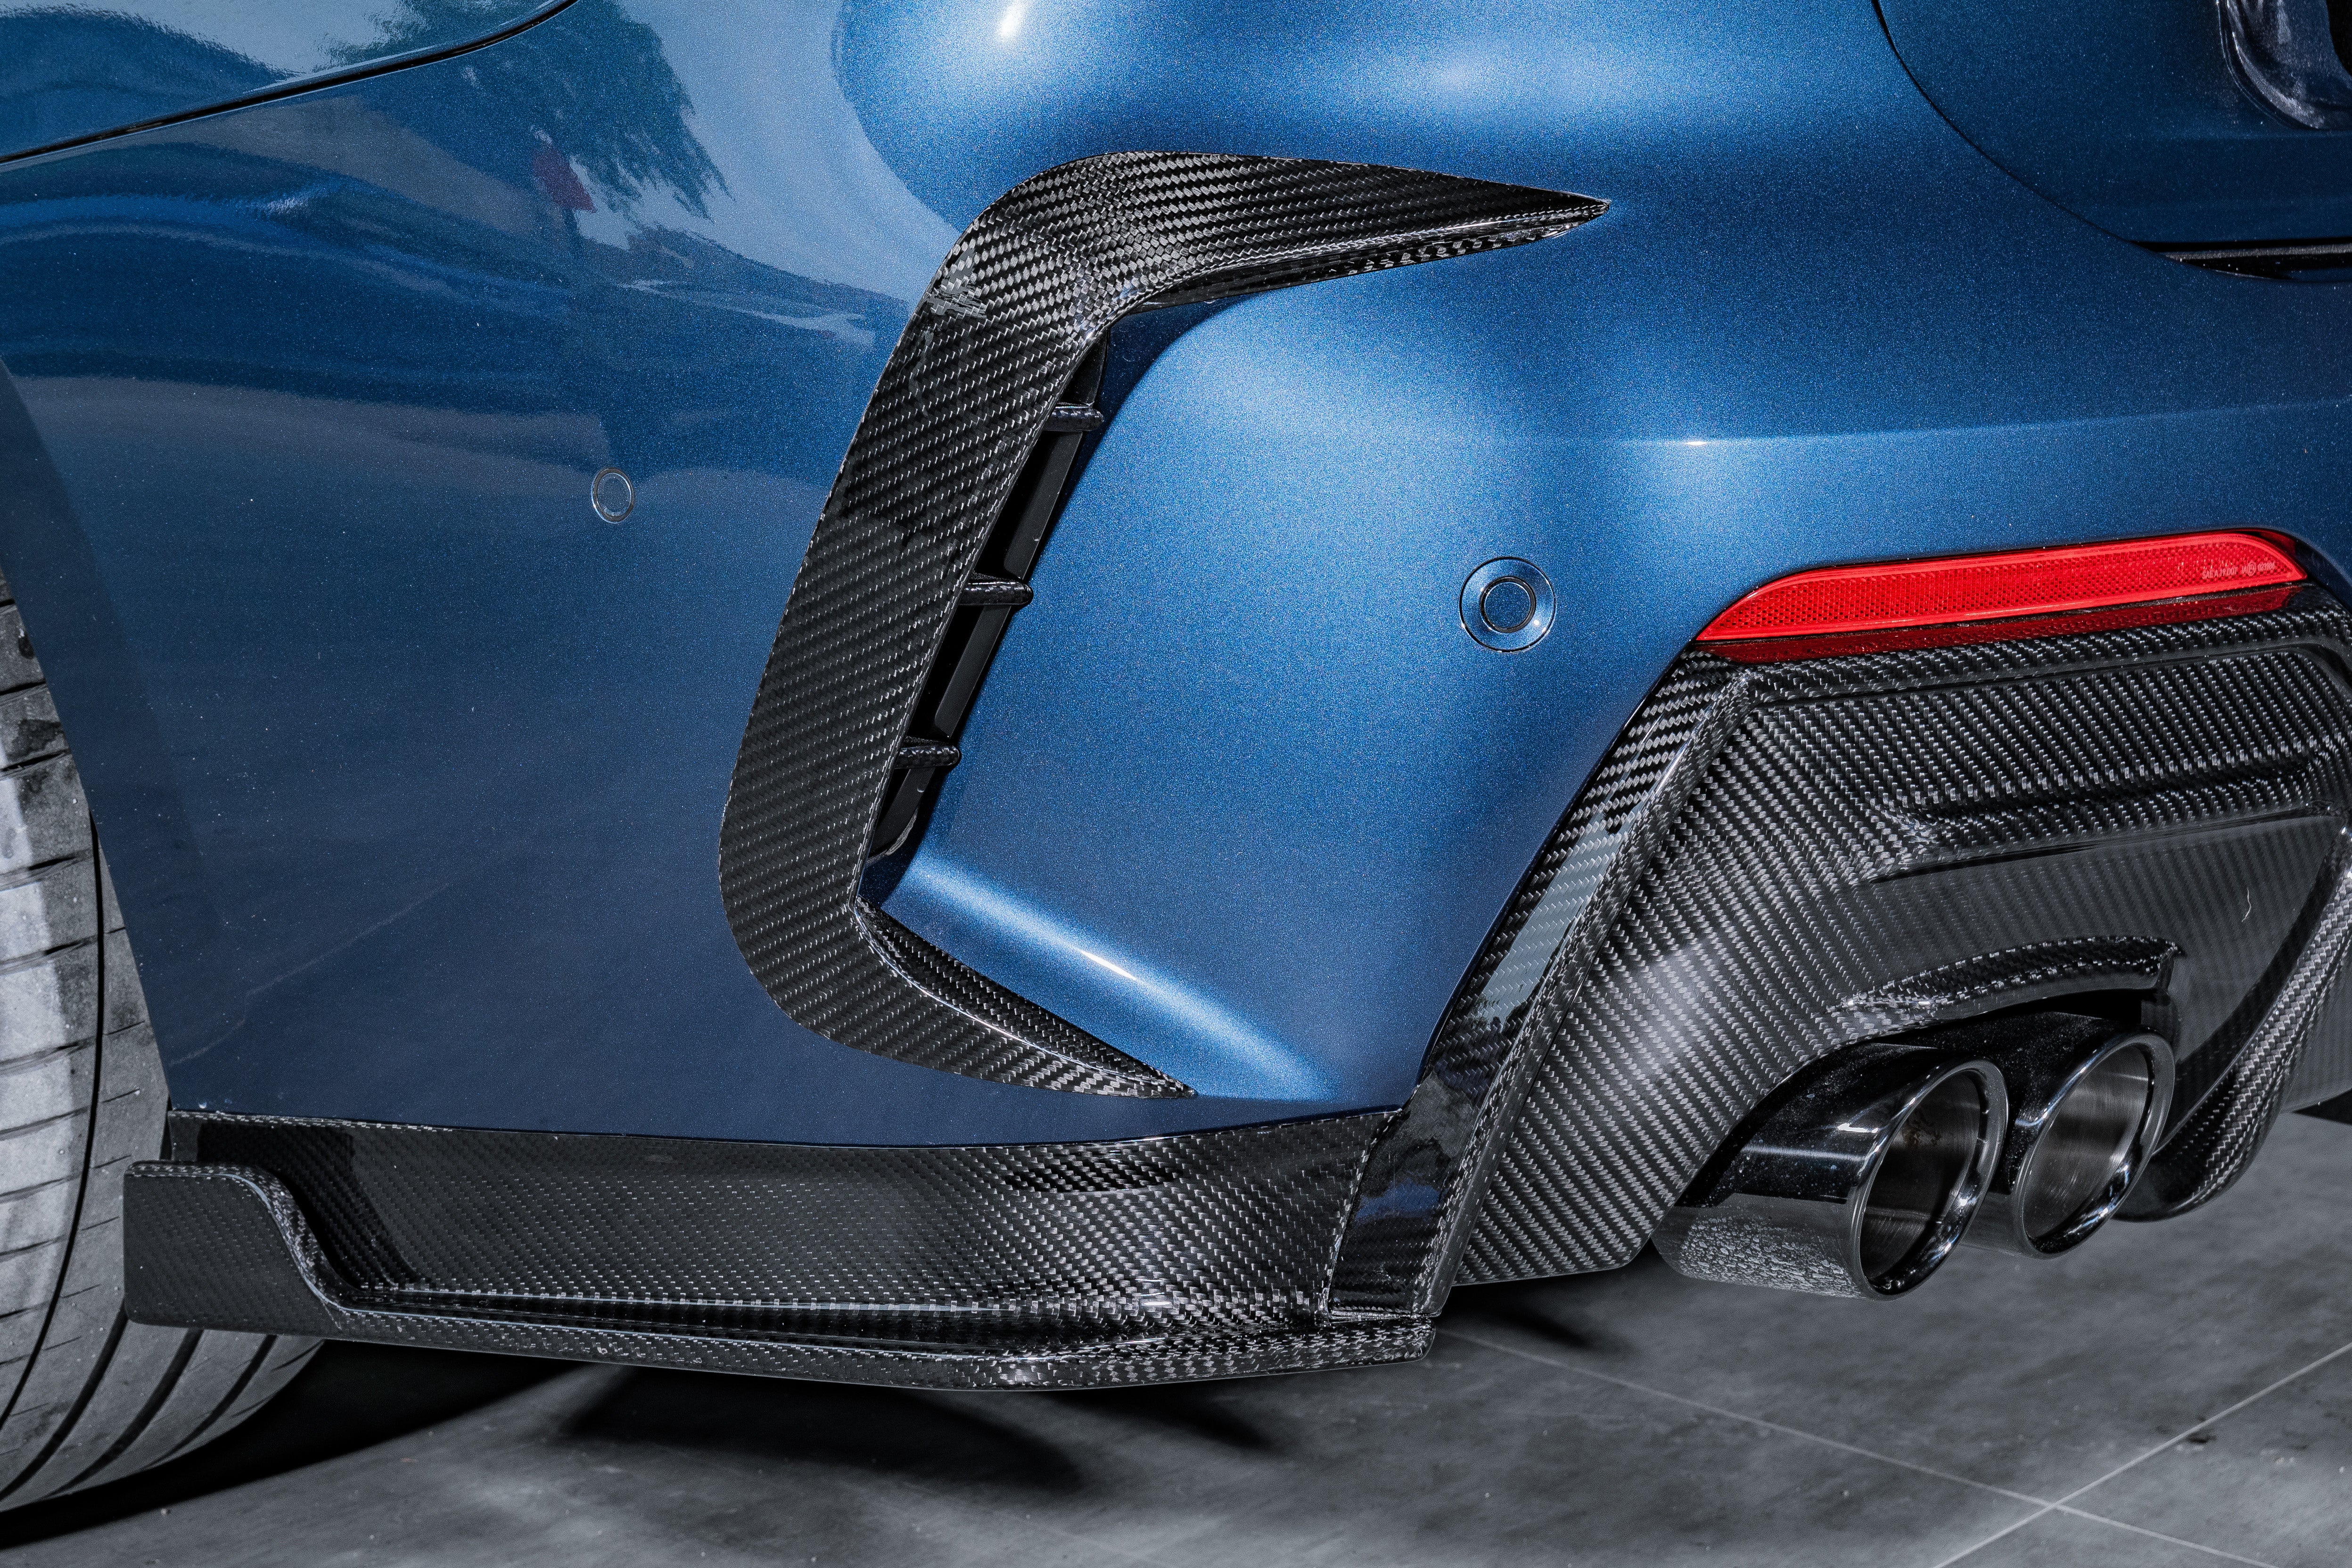 Karbel Carbon Dry Carbon Fiber Full Body Kit For BMW 4 Series G22 G23 430i M440i 2020-ON